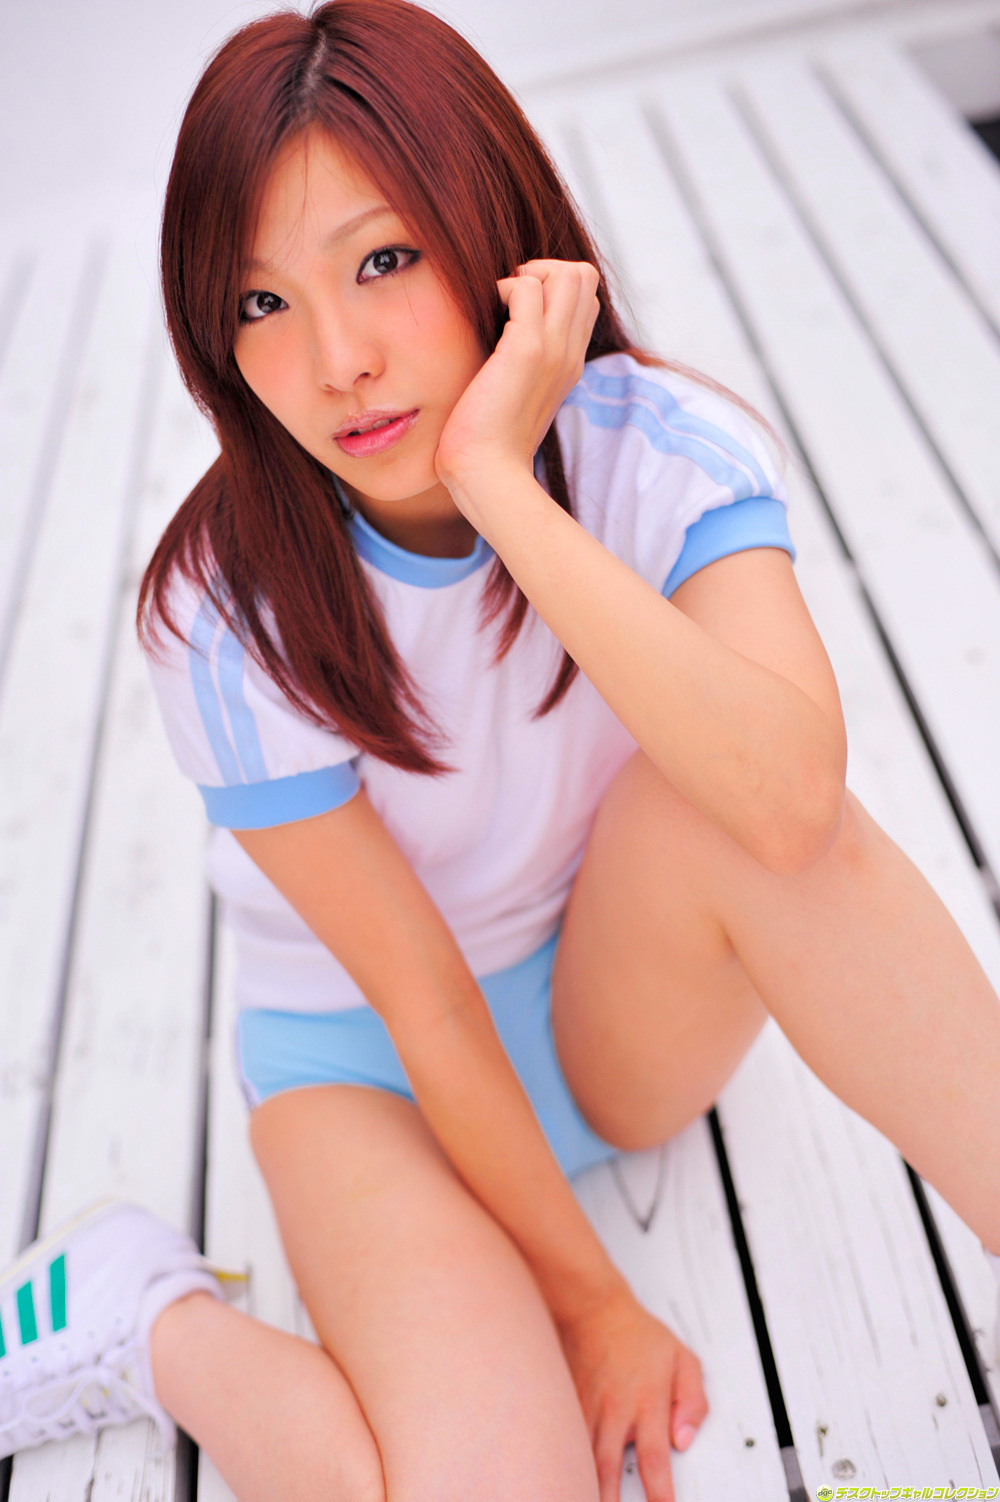 渡辺朱莉 Shuri Watanabe [DGC] 2012年04月號 No.1022 日本美女